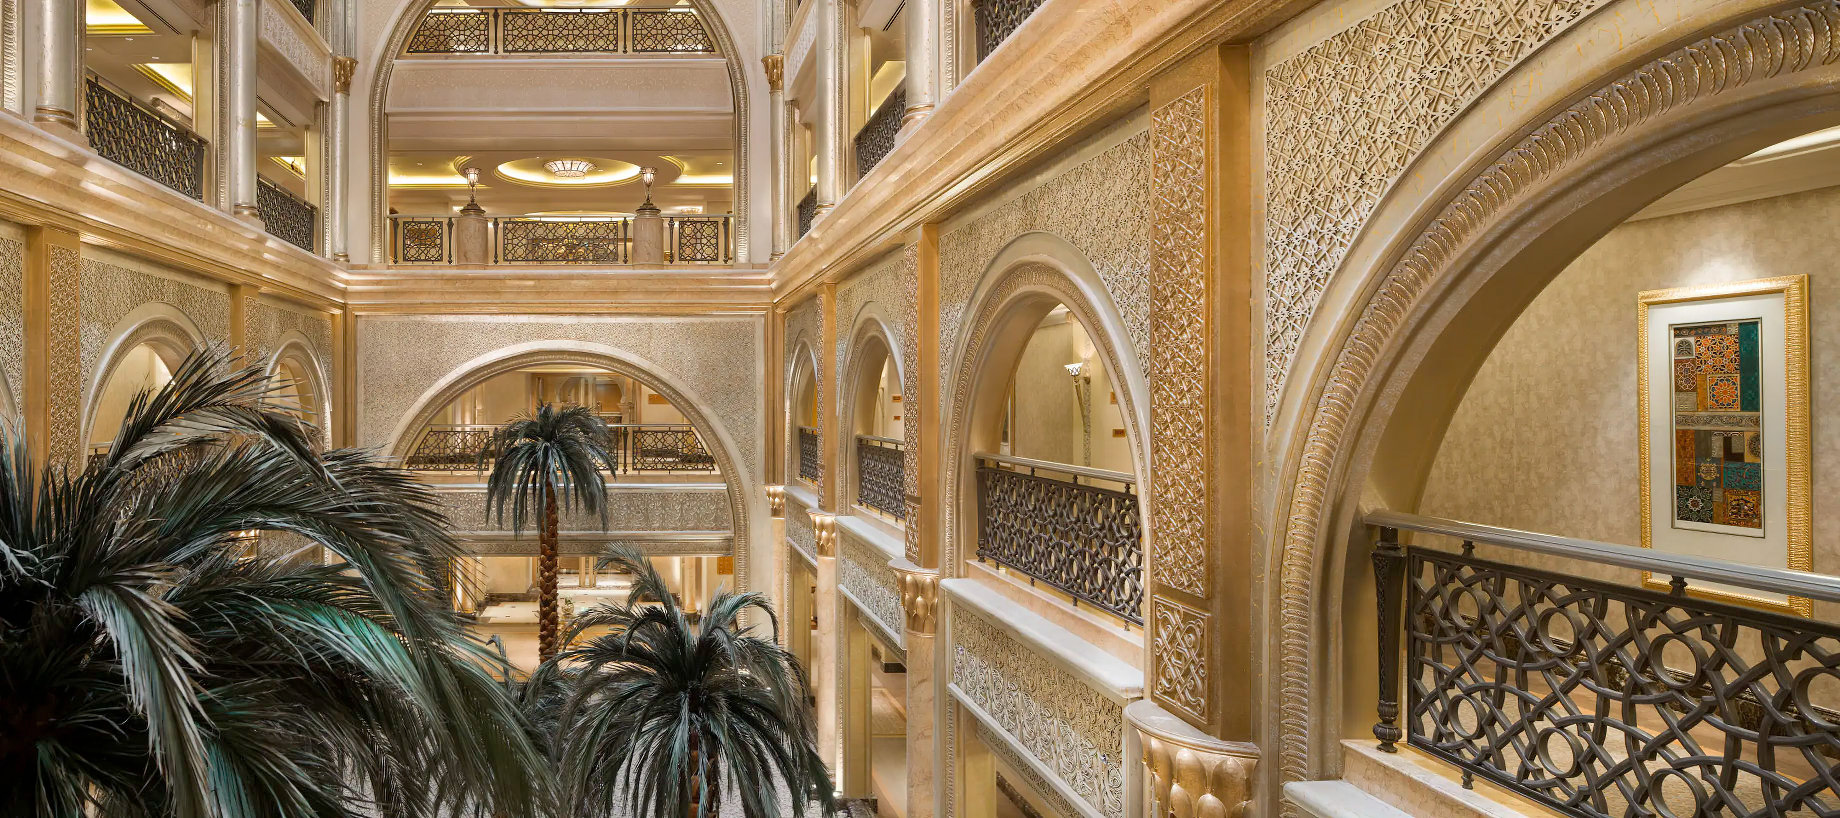 Emirates Palace Abu Dhabi Hotel – Abu Dhabi, UAE – Palm Tree Corridors